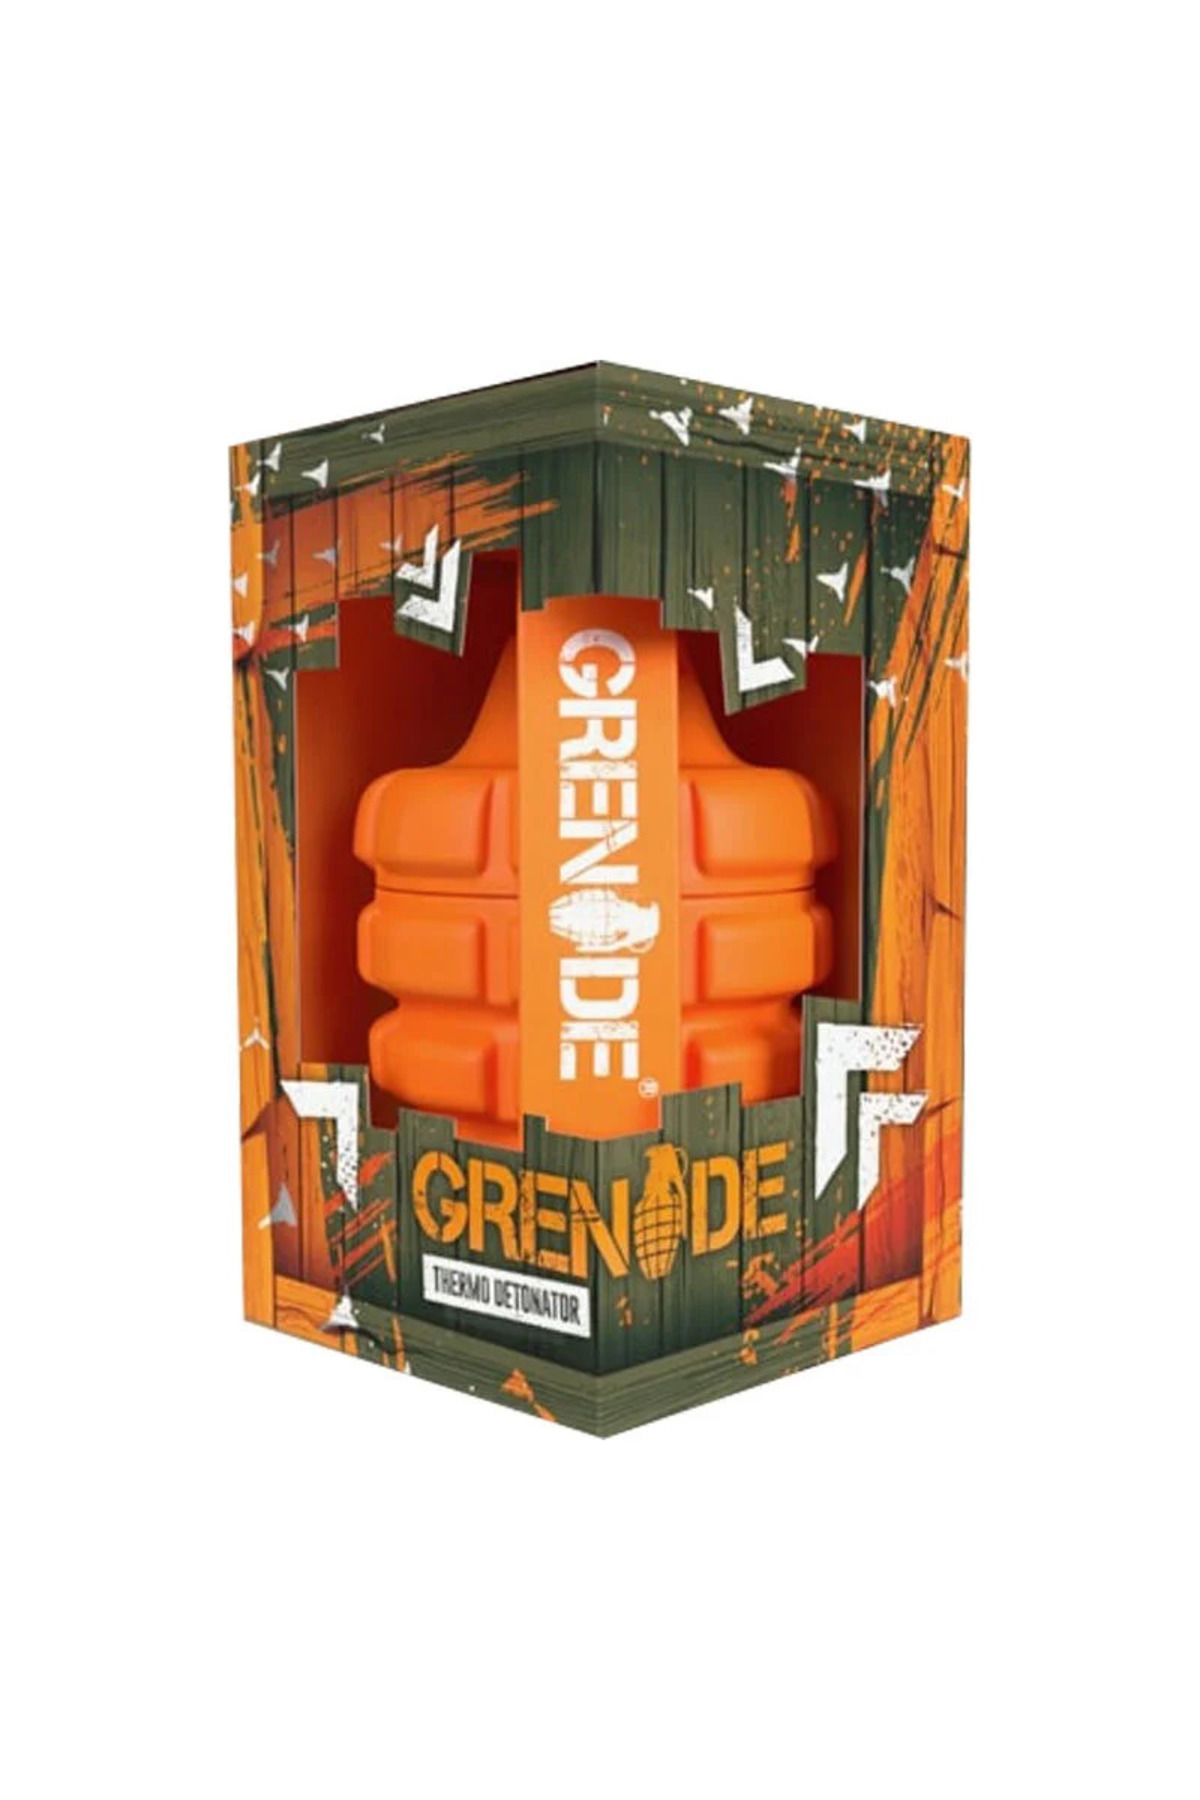 Grenade Thermo Detonator 100 Kapsül Enerji Güç Kafein Yeşil Çay Turunç Ekstresi